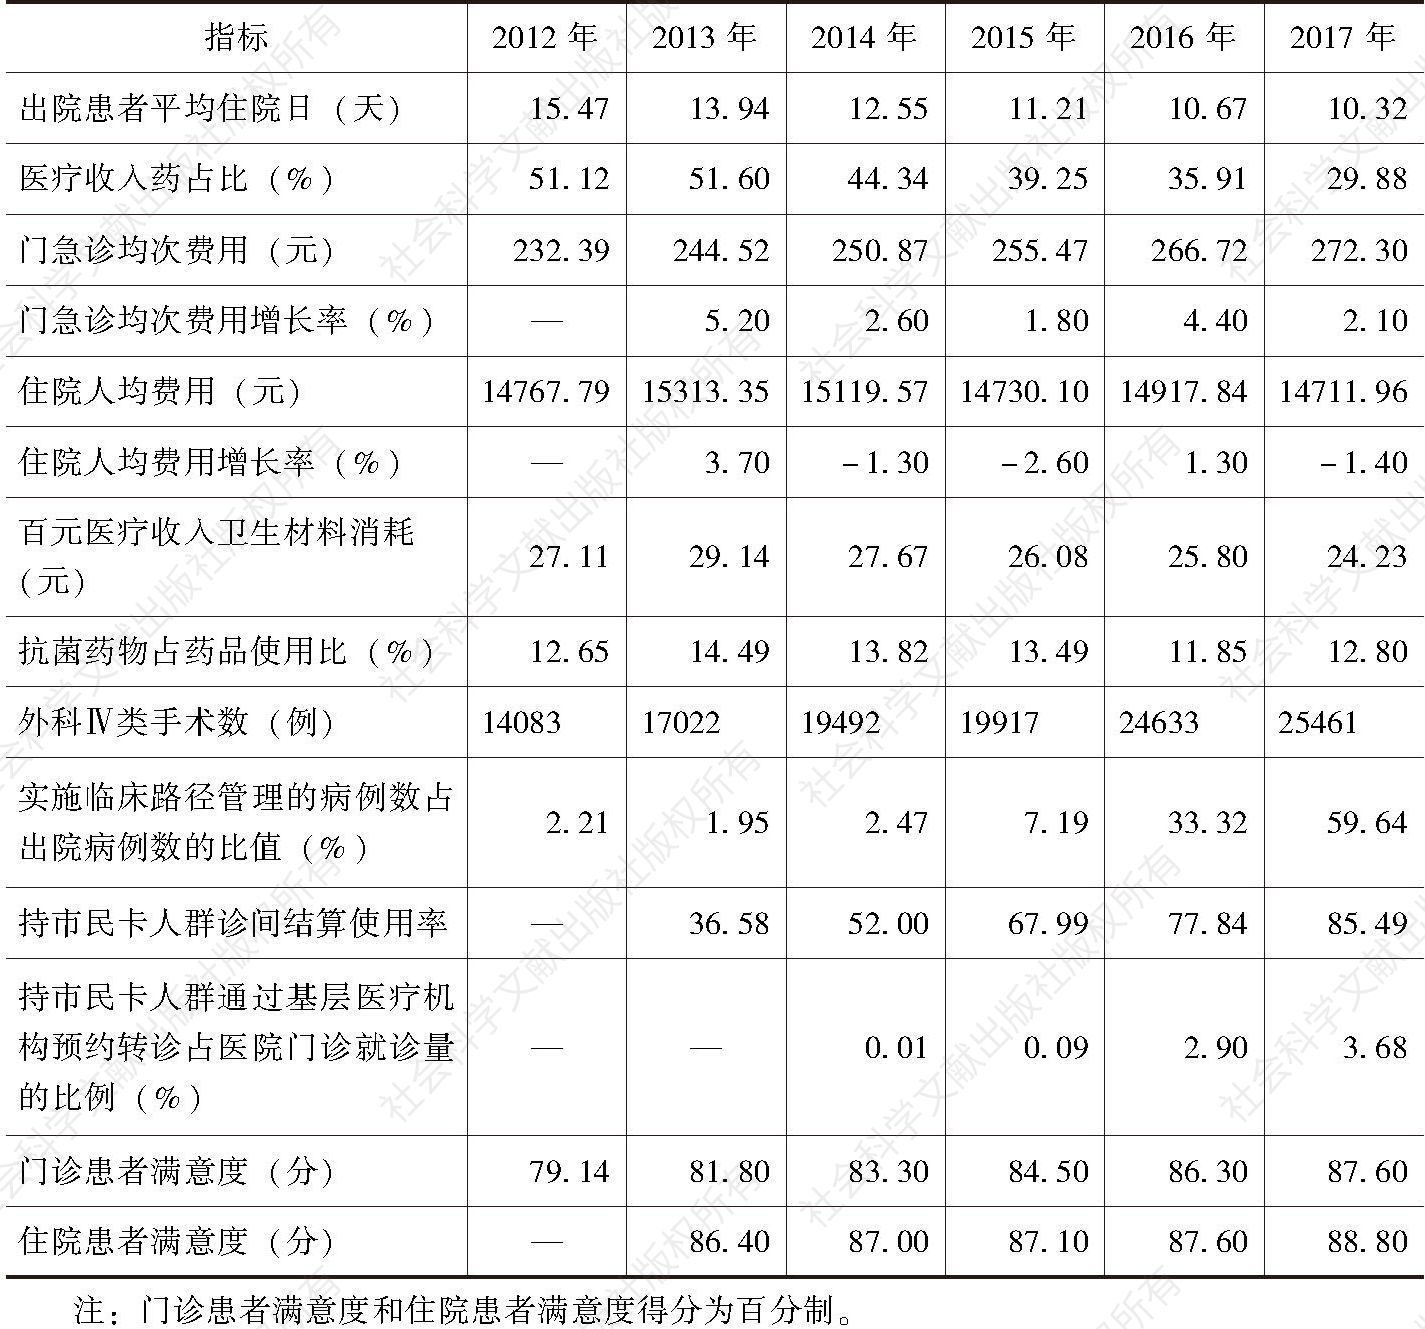 表6-2 2012～2017年杭州市属公立医院综合改革关键绩效指标变化趋势